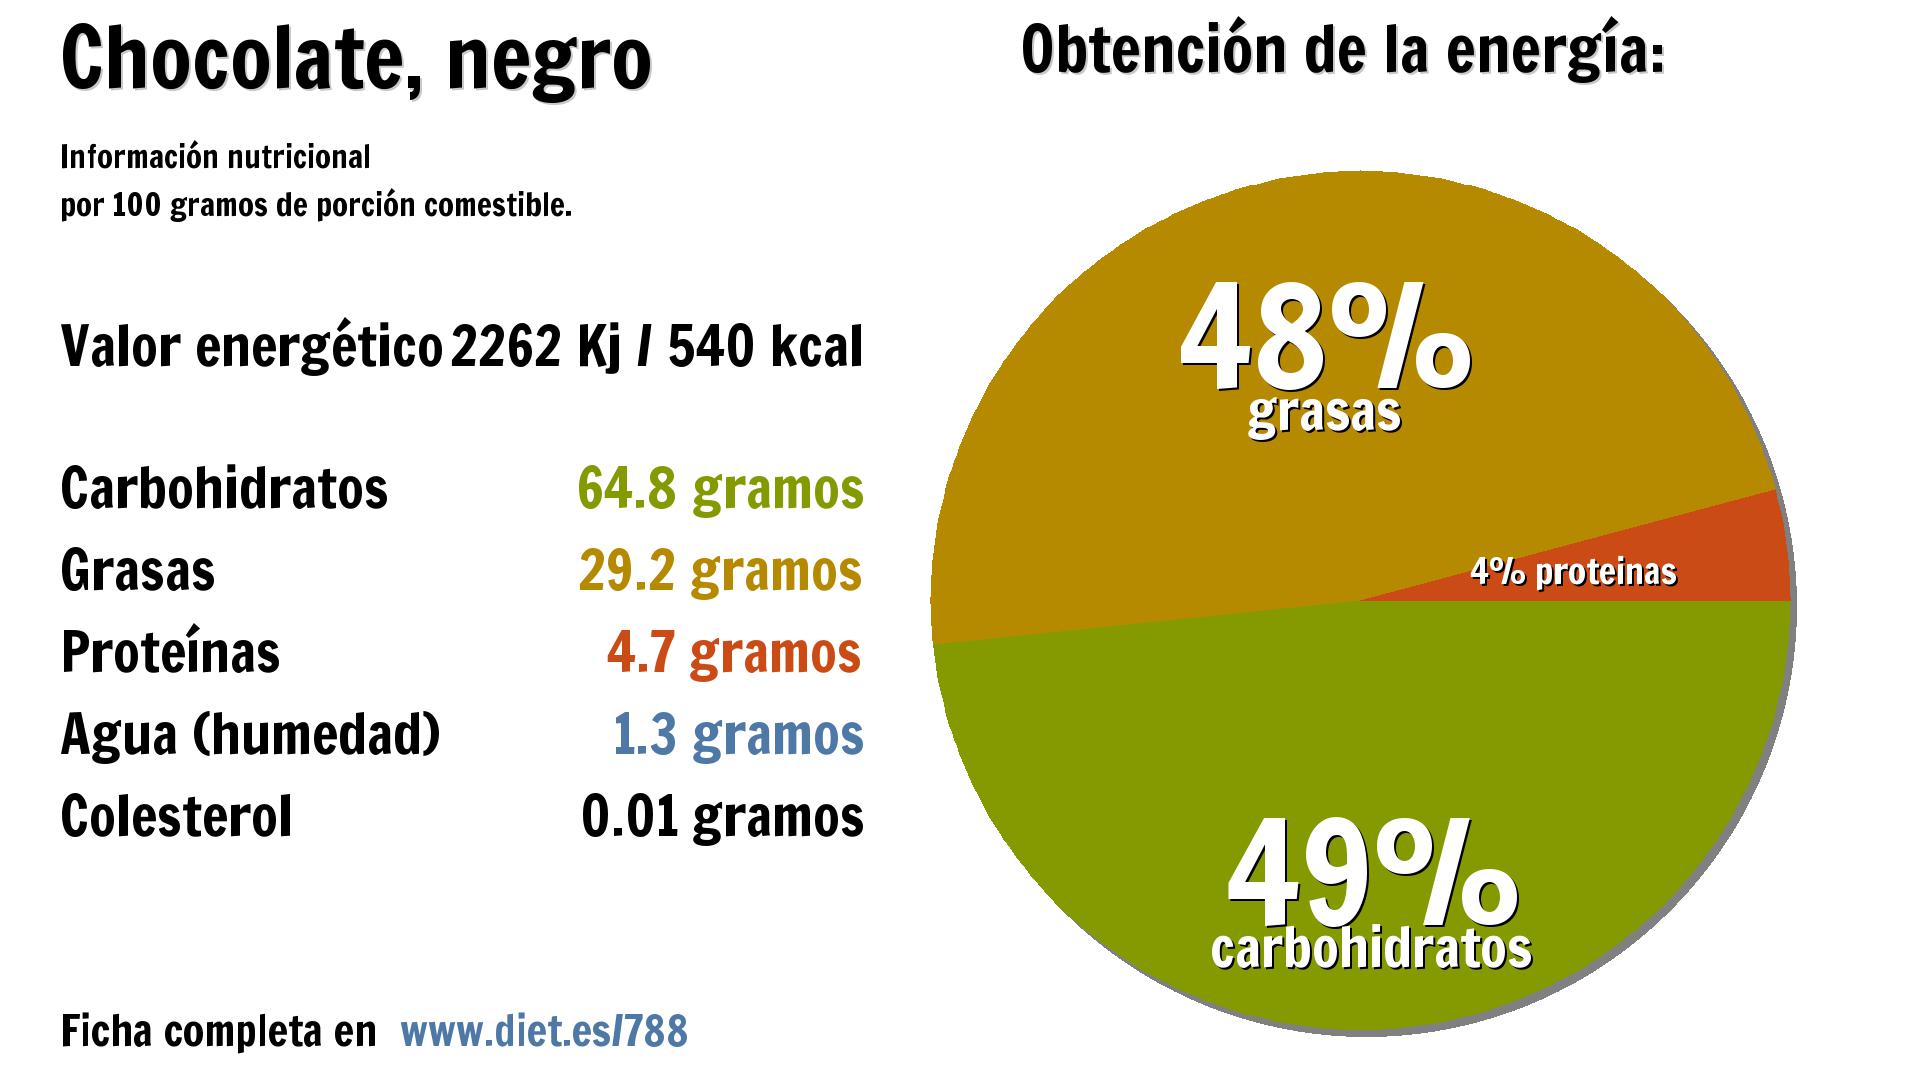 Chocolate, negro: energía 2262 Kj, carbohidratos 65 g., grasas 29 g., proteínas 5 g. y agua 1 g.